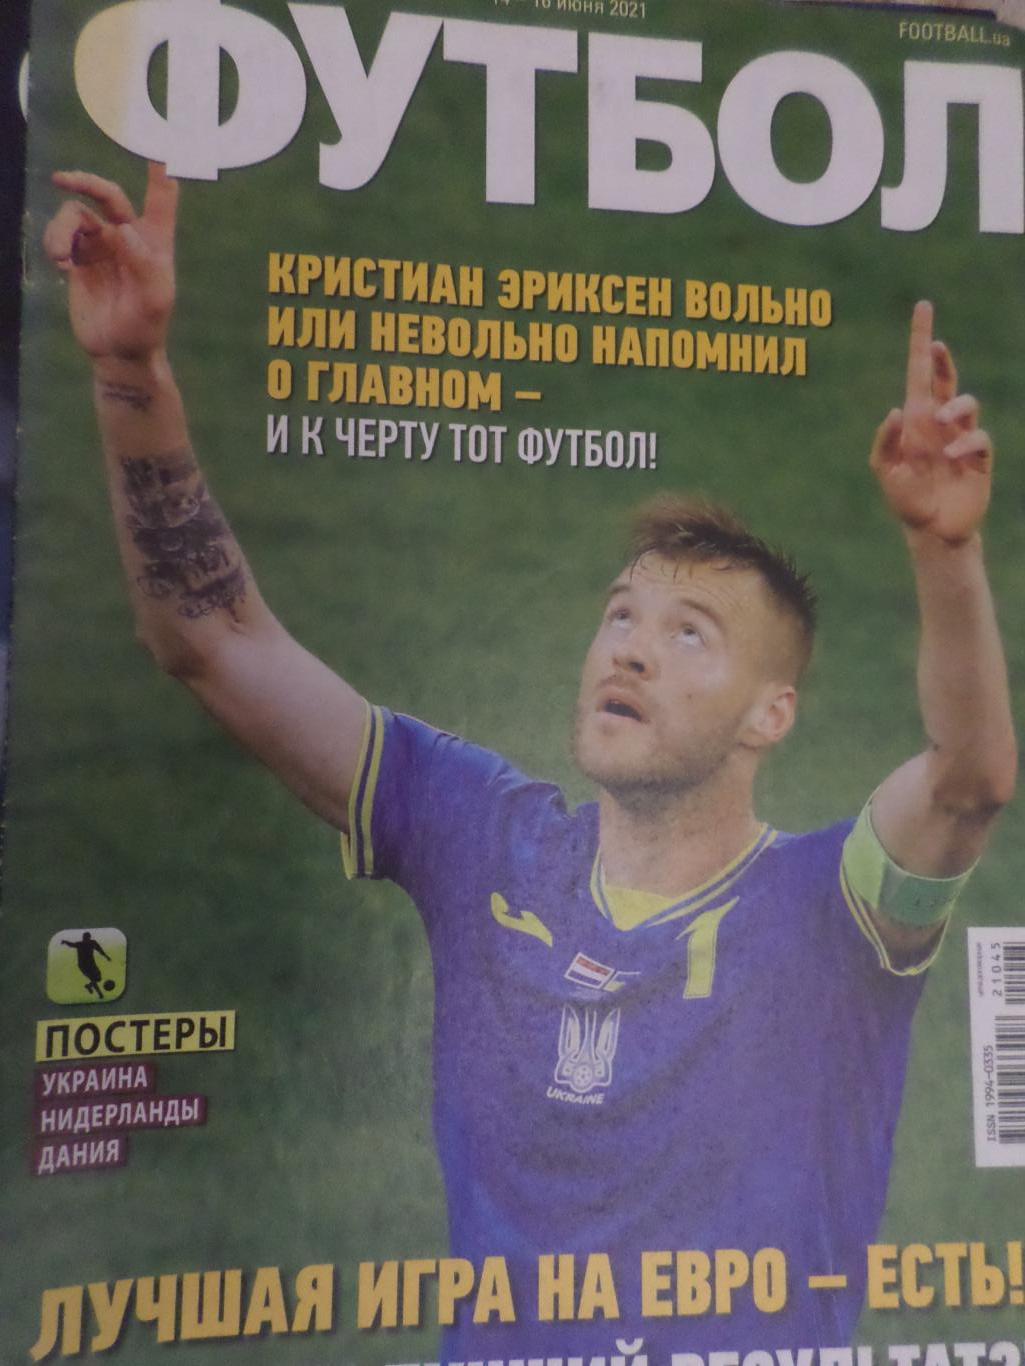 Еженедельник Футбол, Киев, № 45 2021 год